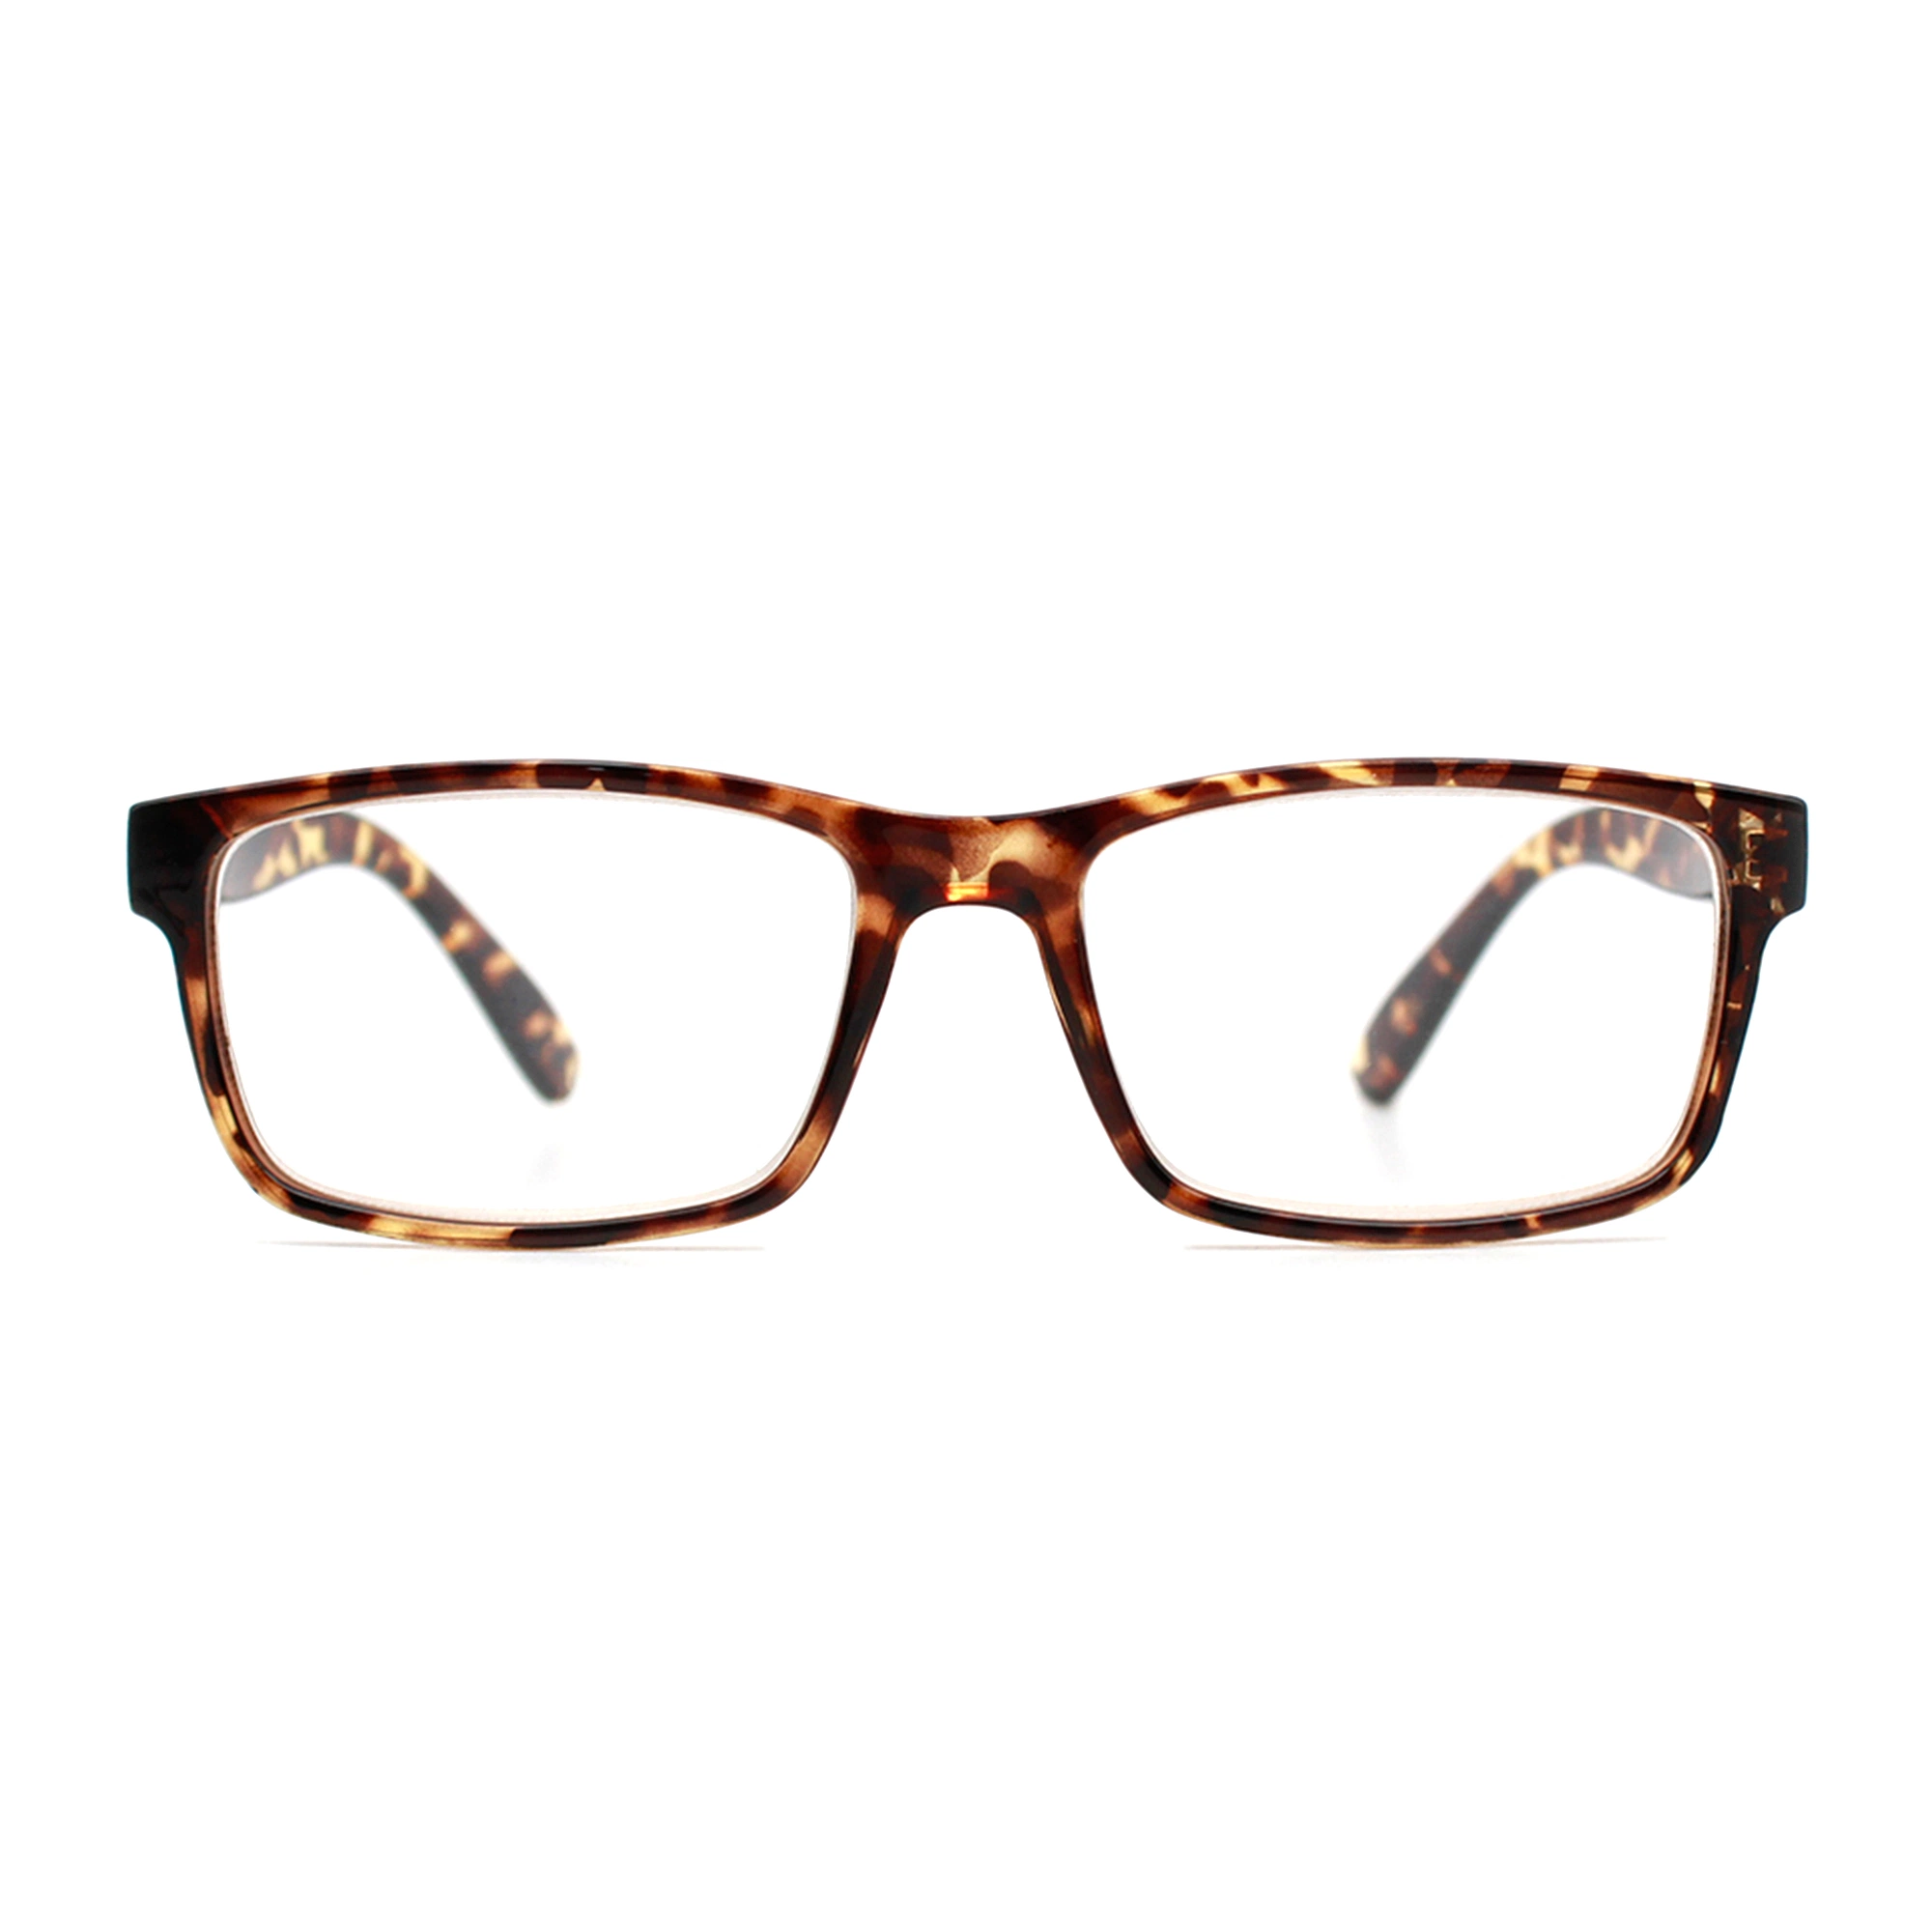 Cadre Carré Demi promotionnel Slim unisexe Lunettes optiques Vintage Manufacturier charnière flexible les meilleures Tr20049 de lunettes de lecture (WRP)